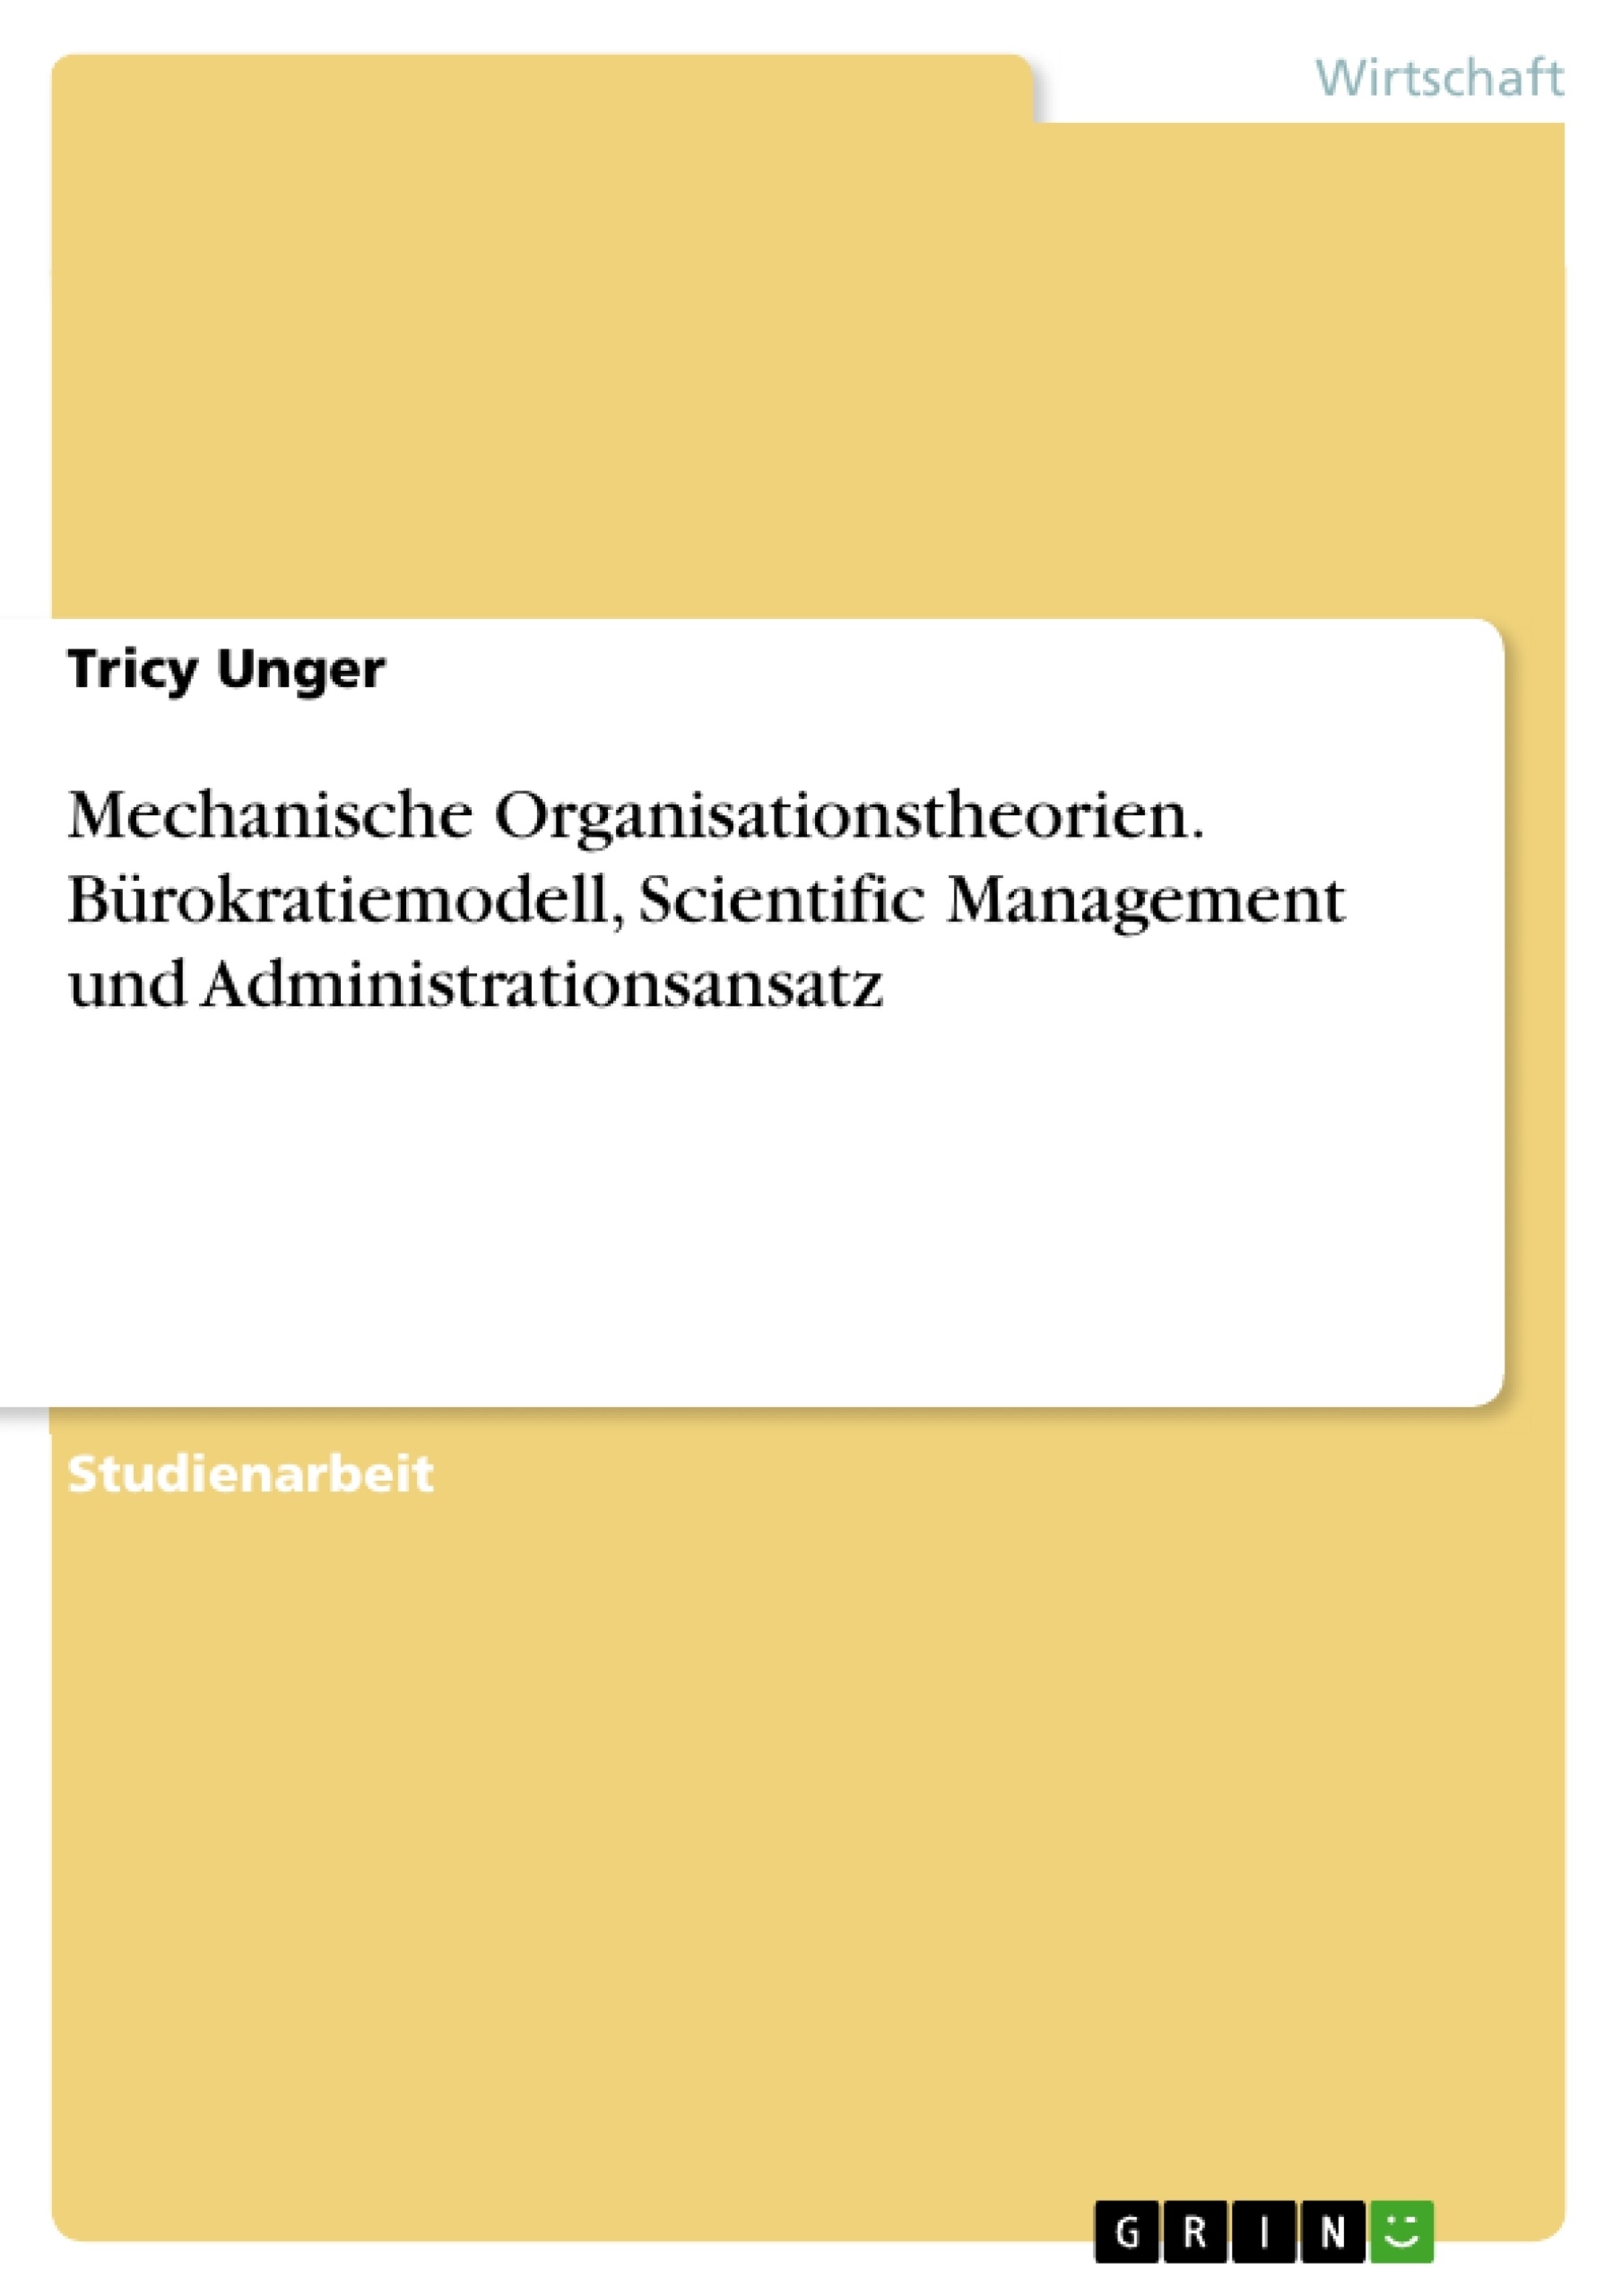 Titre: Mechanische Organisationstheorien. Bürokratiemodell, Scientific Management und Administrationsansatz